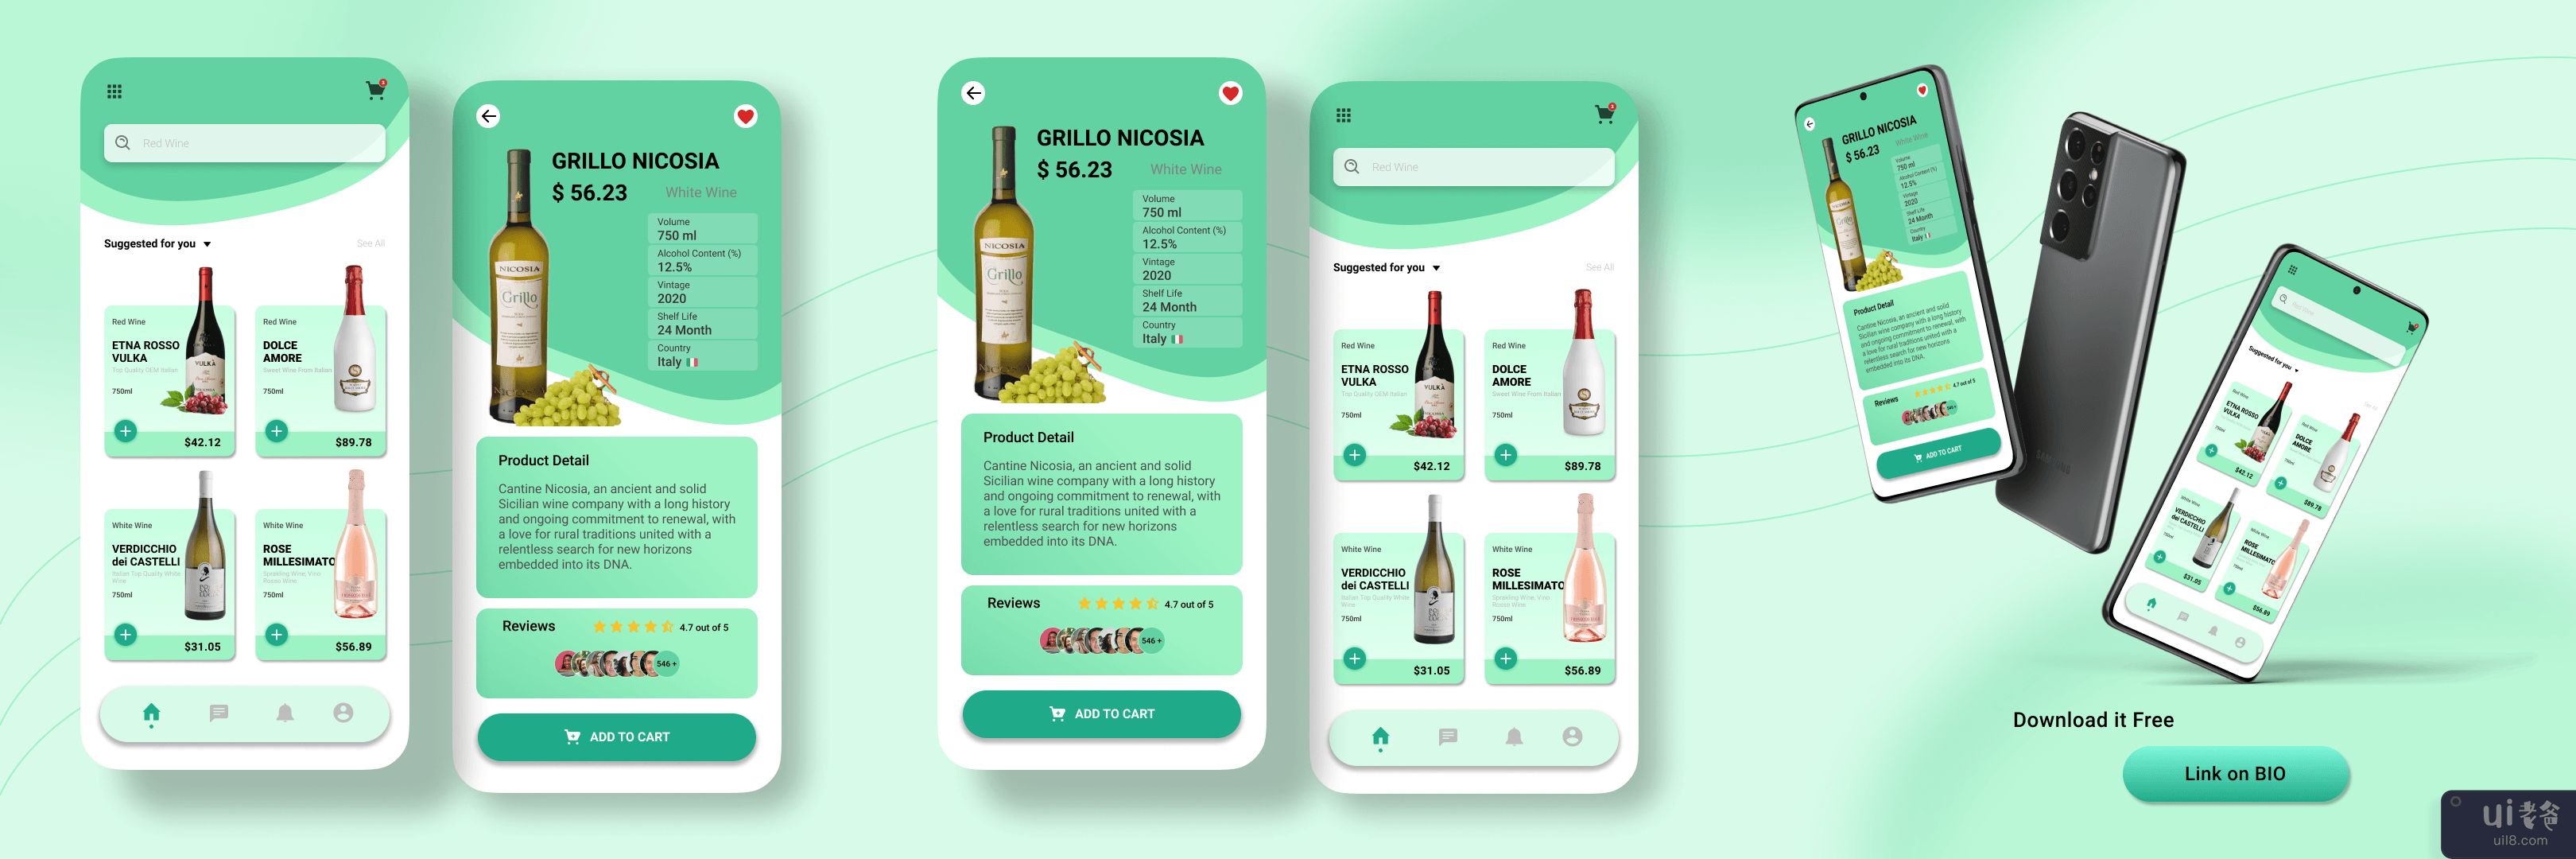 葡萄酒商店应用程序极简主义概念(Wine Store App Minimalist Concept)插图